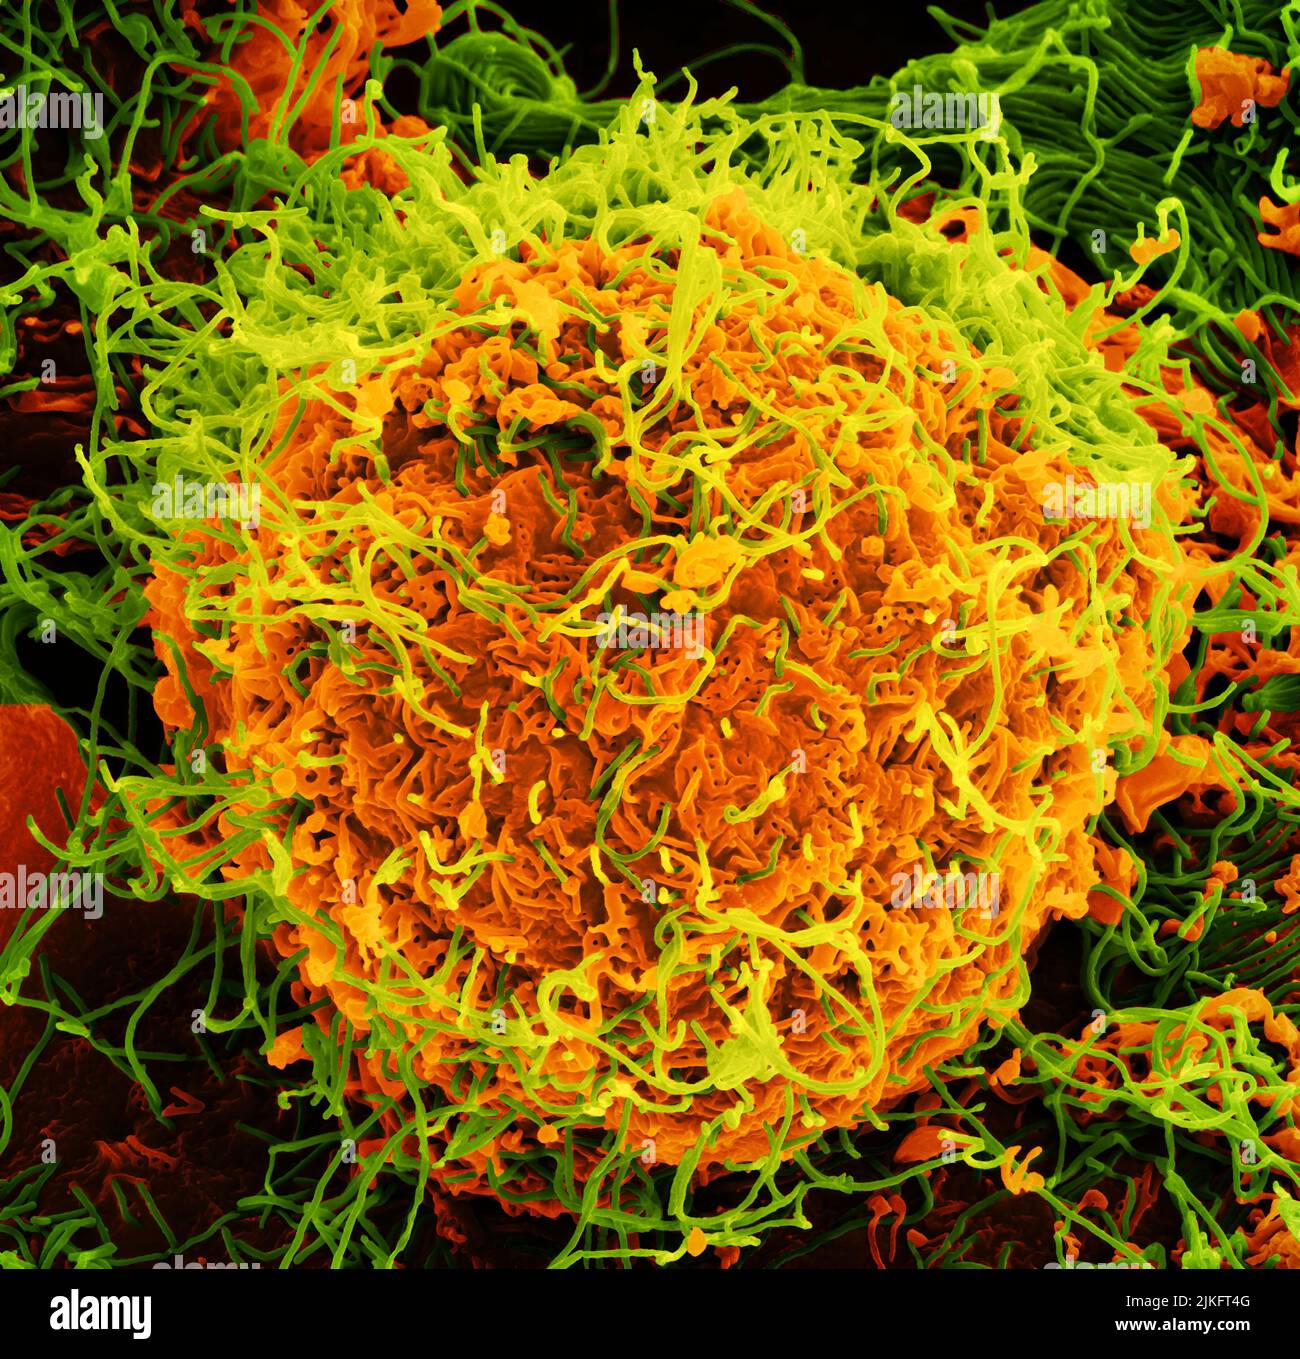 Micrografía electrónica de barrido de las partículas del virus del Ébola (verde) en ciernes y adheridas a la superficie de las células VERO E6 infectadas (naranja). Imagen enfocada en el NIAID Integrated Research Center en Fort Detrick, Maryland. Crédito: NIAID Foto de stock